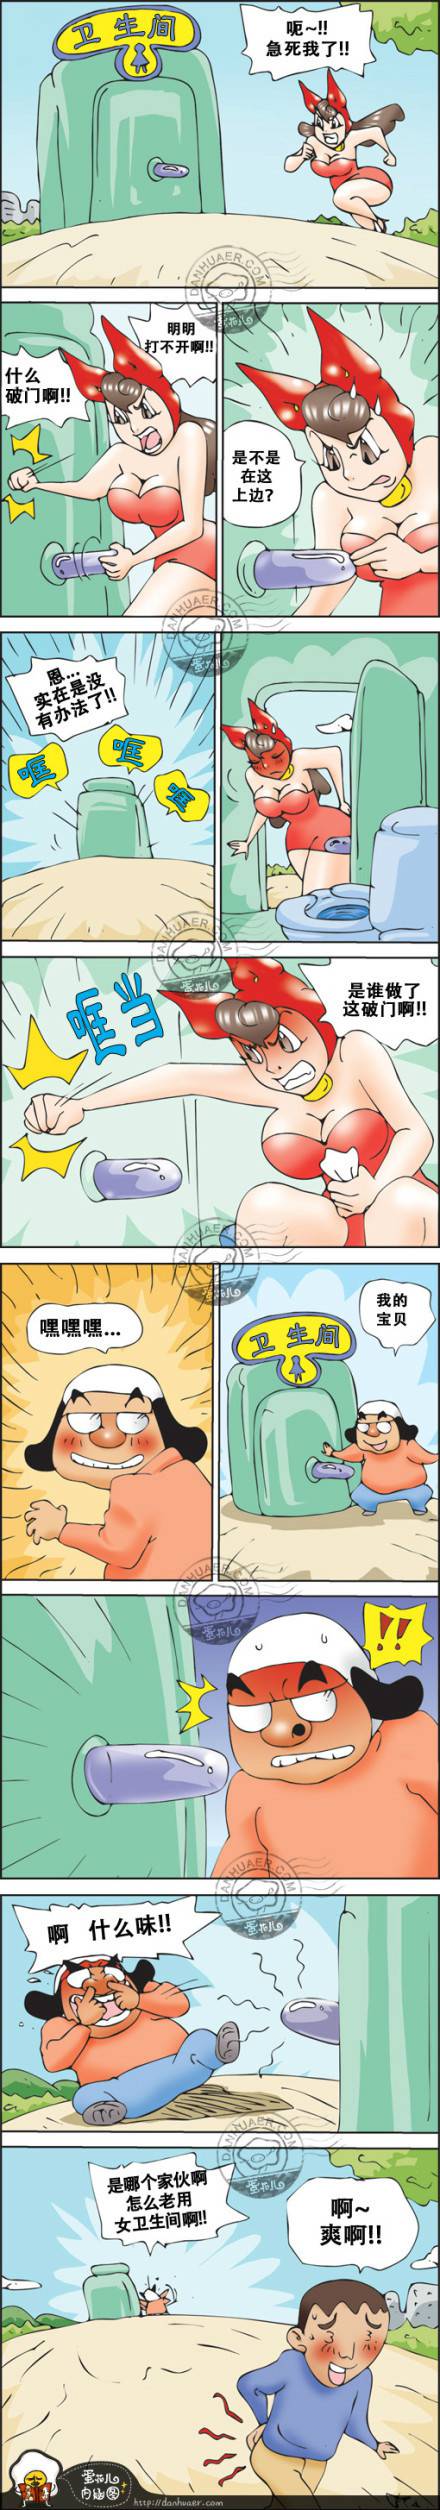 邪恶漫画爆笑囧图第265刊：美女警察的诱惑